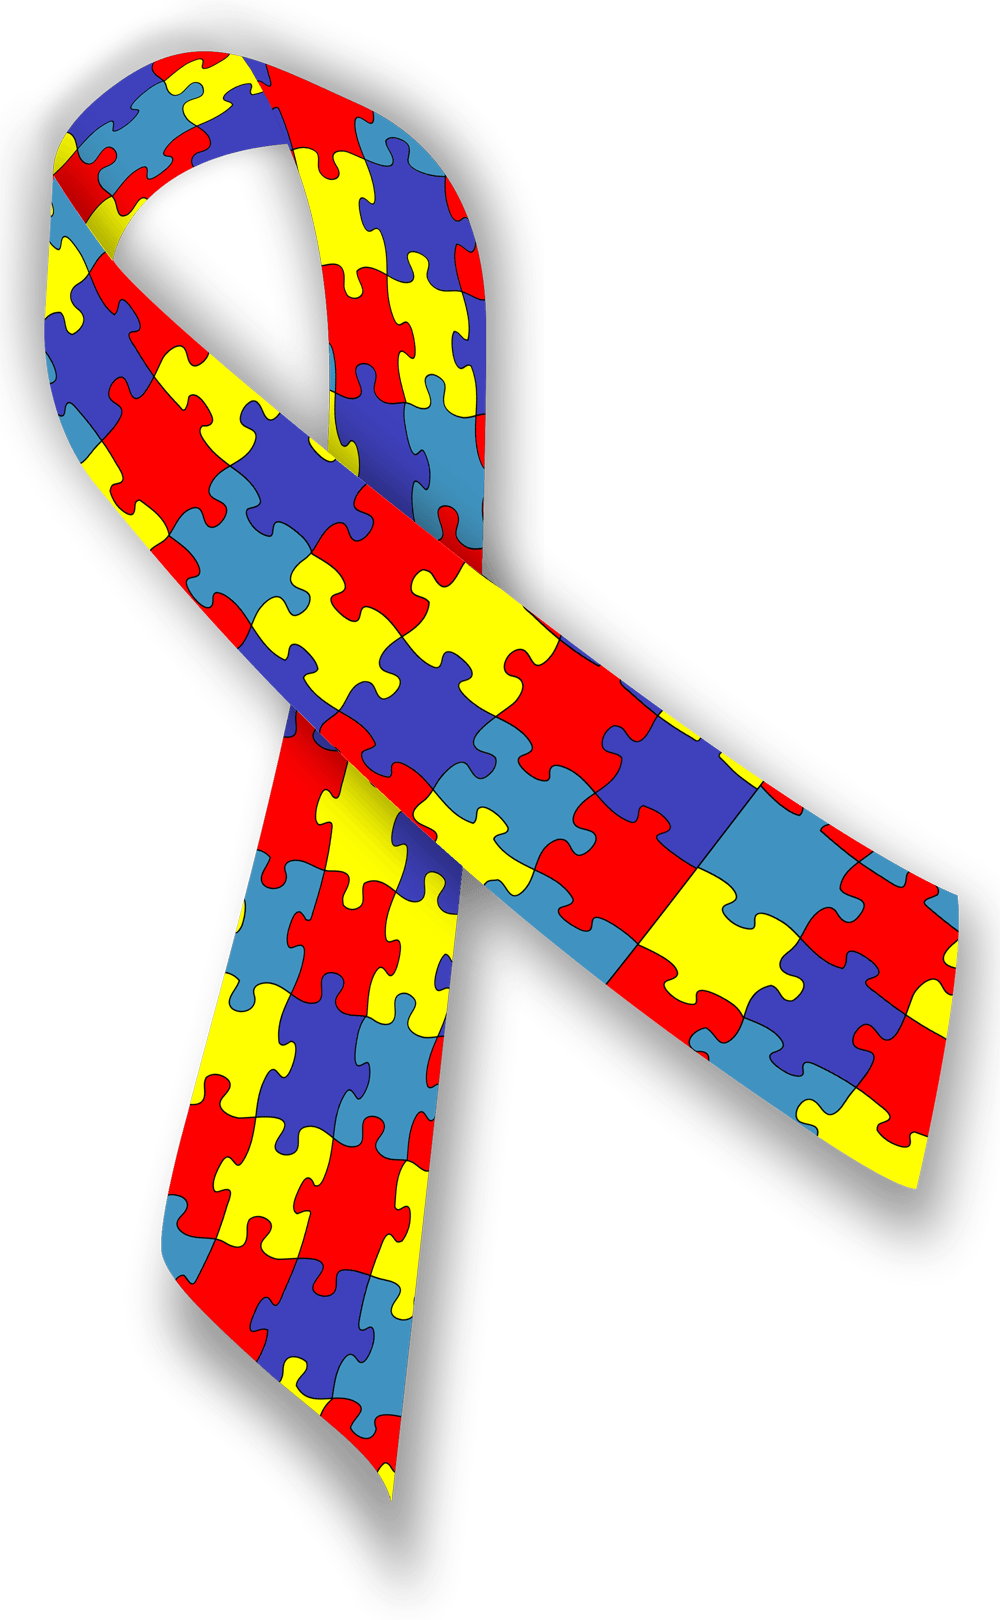 Autism Awareness Ribbon.png